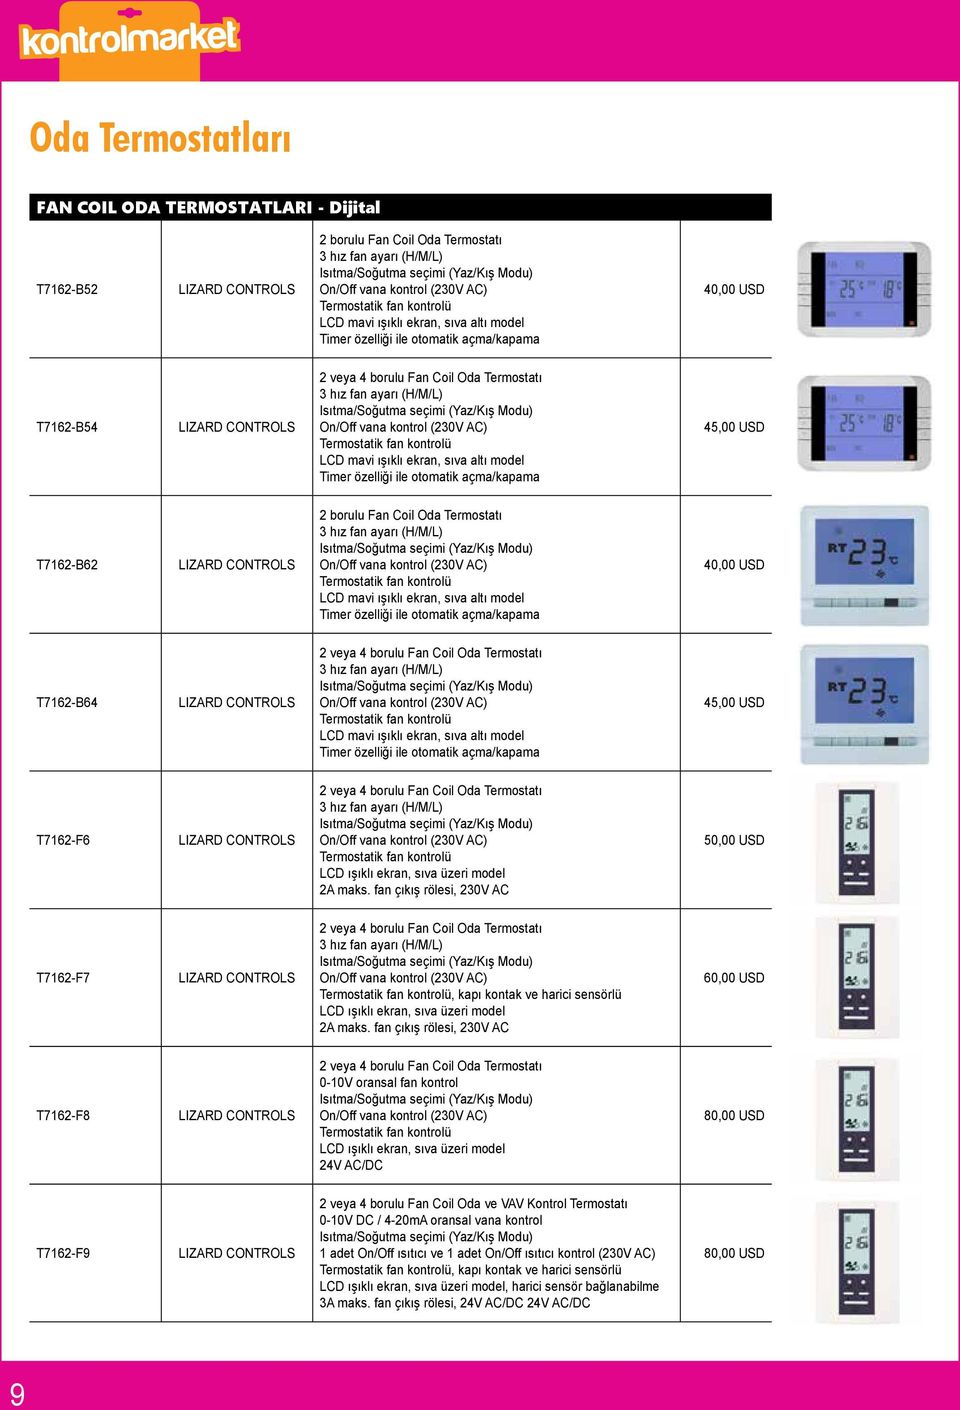 Isıtma/Soğutma seçimi (Yaz/Kış Modu) On/Off vana kontrol (230V AC) Termostatik fan kontrolü LCD mavi ışıklı ekran, sıva altı model Timer özelliği ile otomatik açma/kapama 45,00 USD T7162-B62 2 borulu